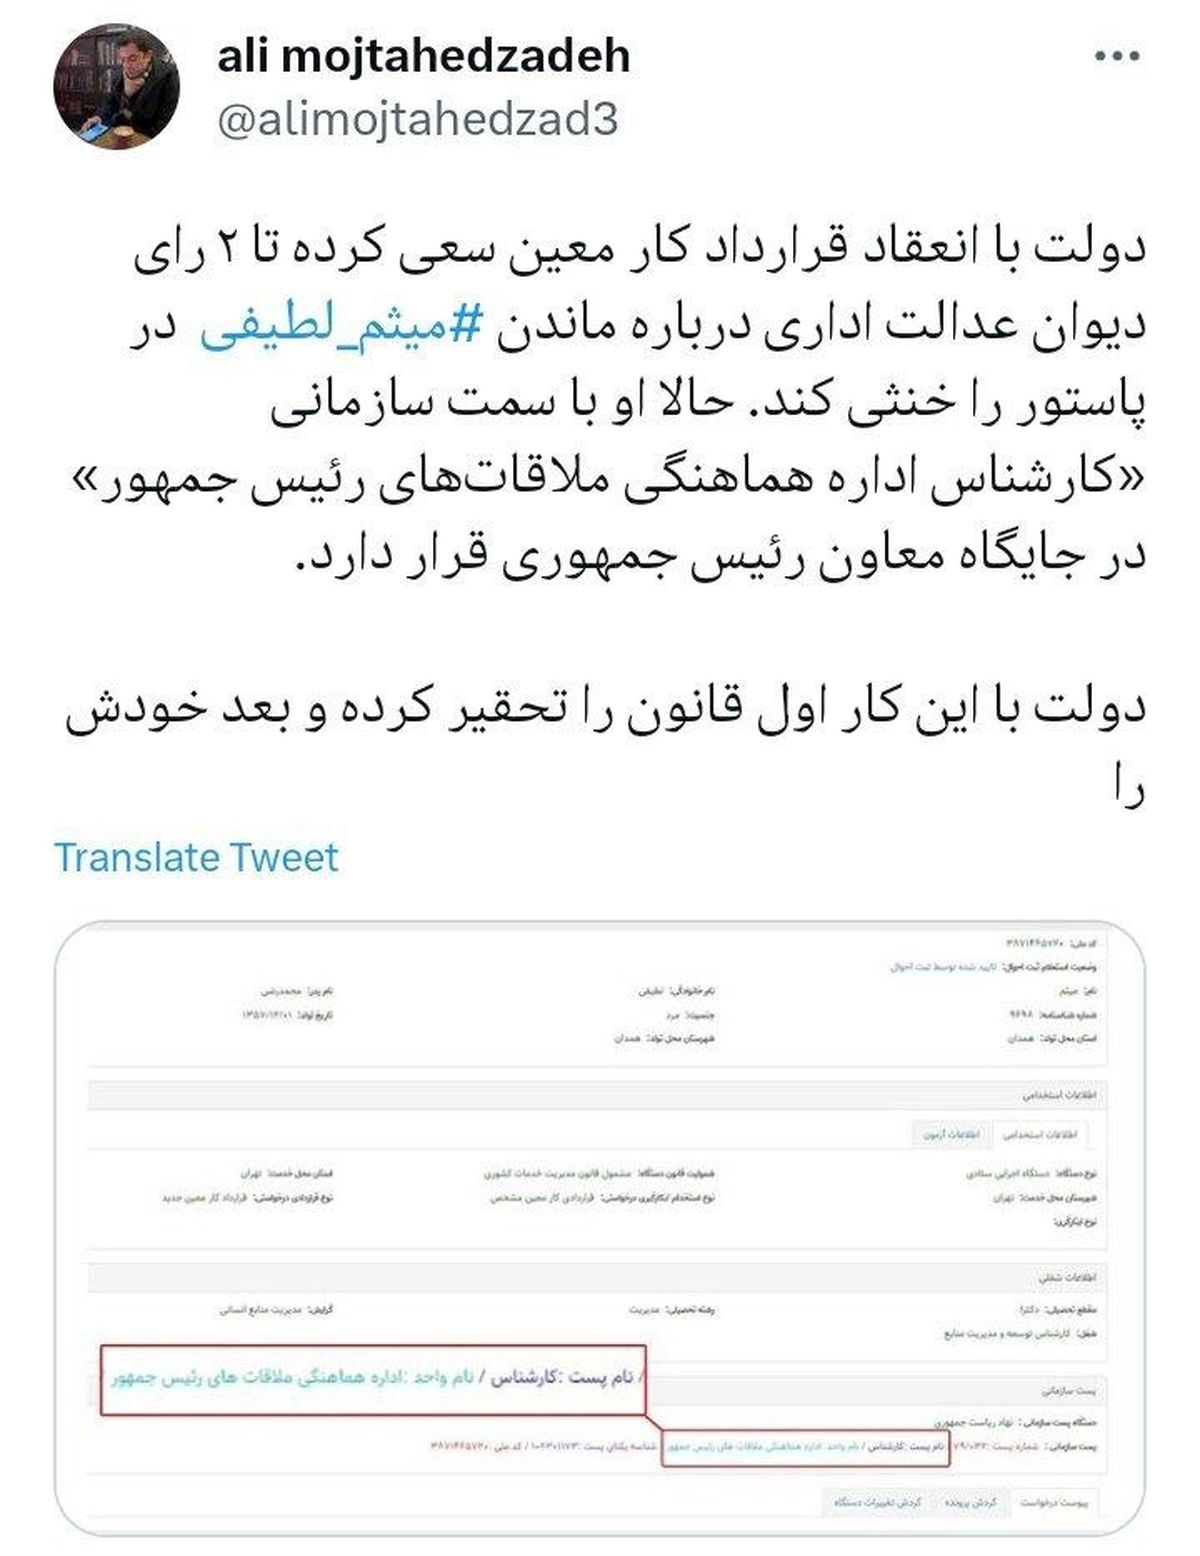 علی مجتهدزاده، حقوقدان: با ماندن میثم لطیفی، دولت اول قانون را تحقیر کرده و بعد خودش را